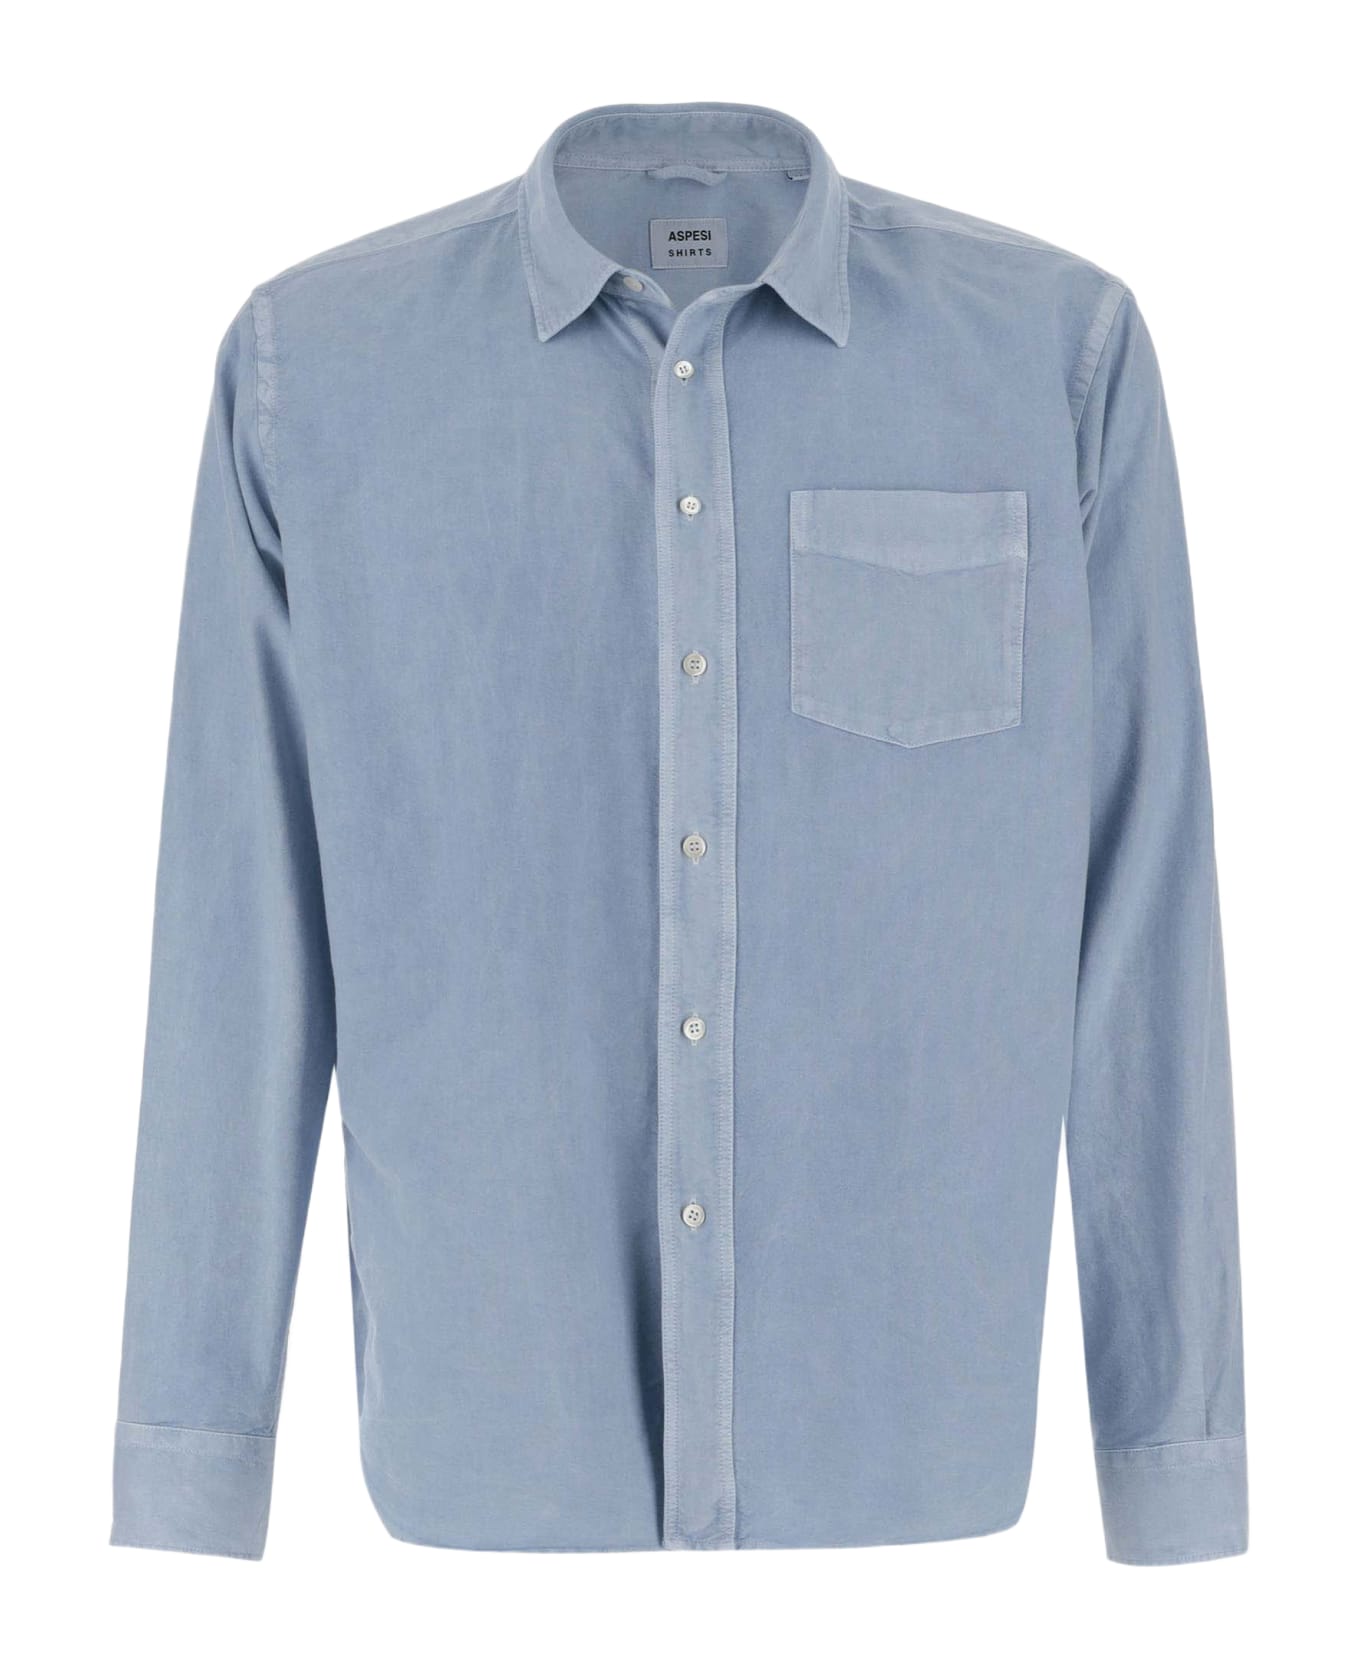 Aspesi Cotton Oxford Shirt - Clear Blue シャツ